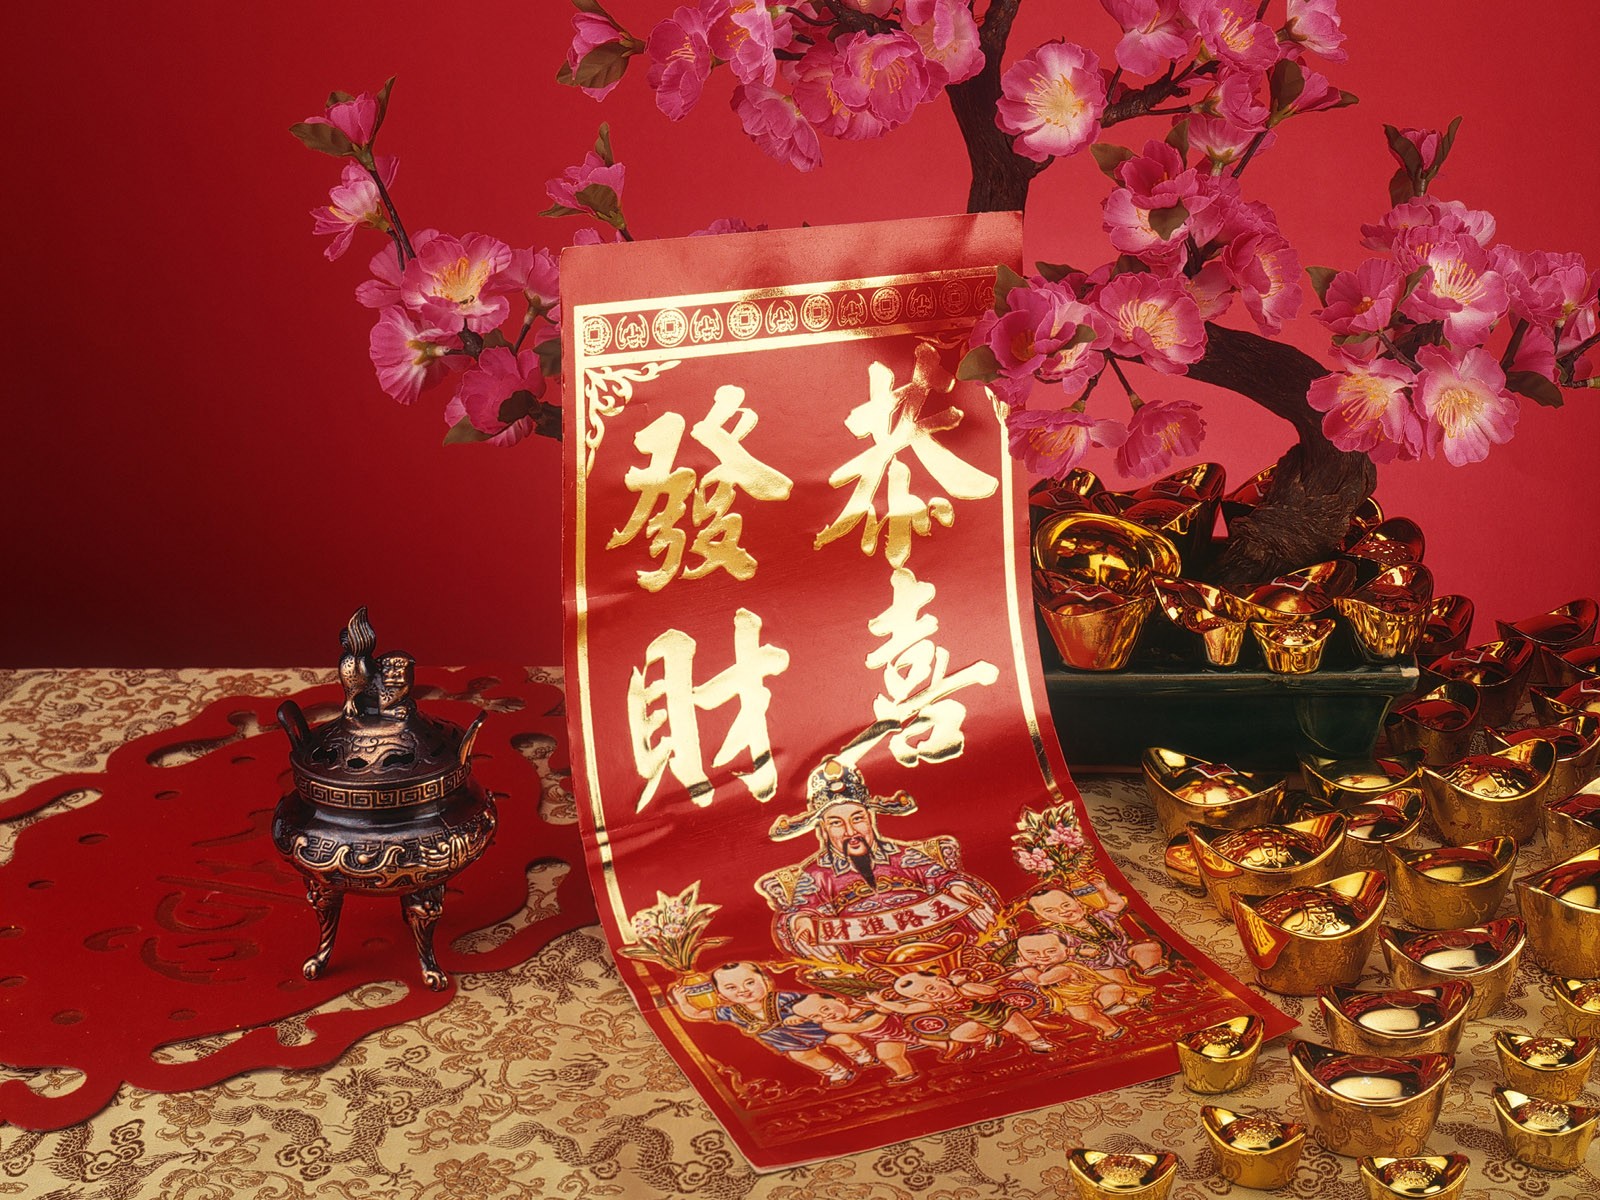 Vent de la Chine papier peint rouge festive #50 - 1600x1200